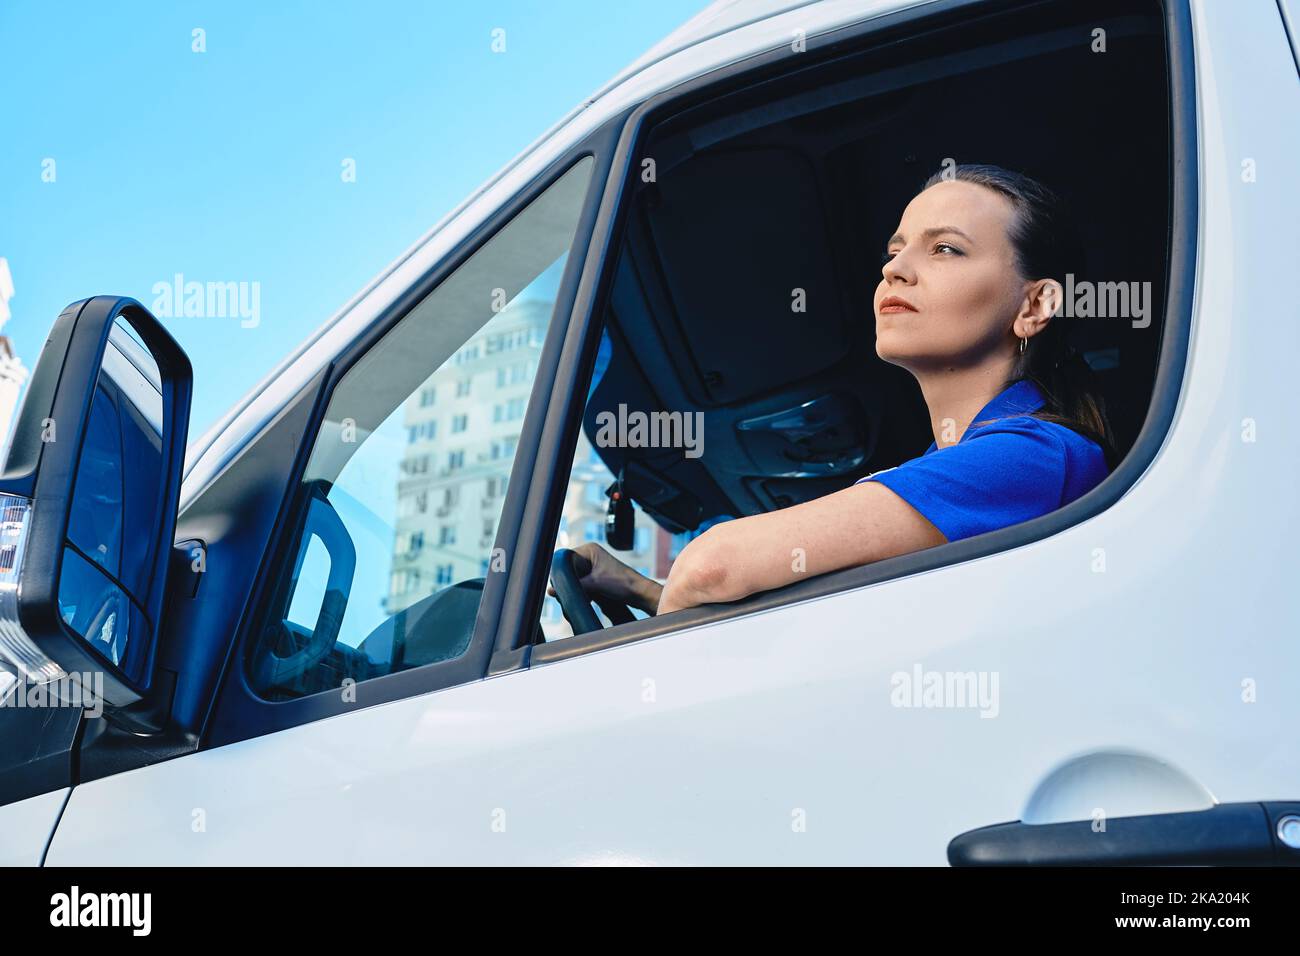 Schöne Frau professionelle LKW-Fahrer sitzen innerhalb Cargo-Auto während der Lieferung. Frauen in männlich dominierten Branchen und Berufen Stockfoto